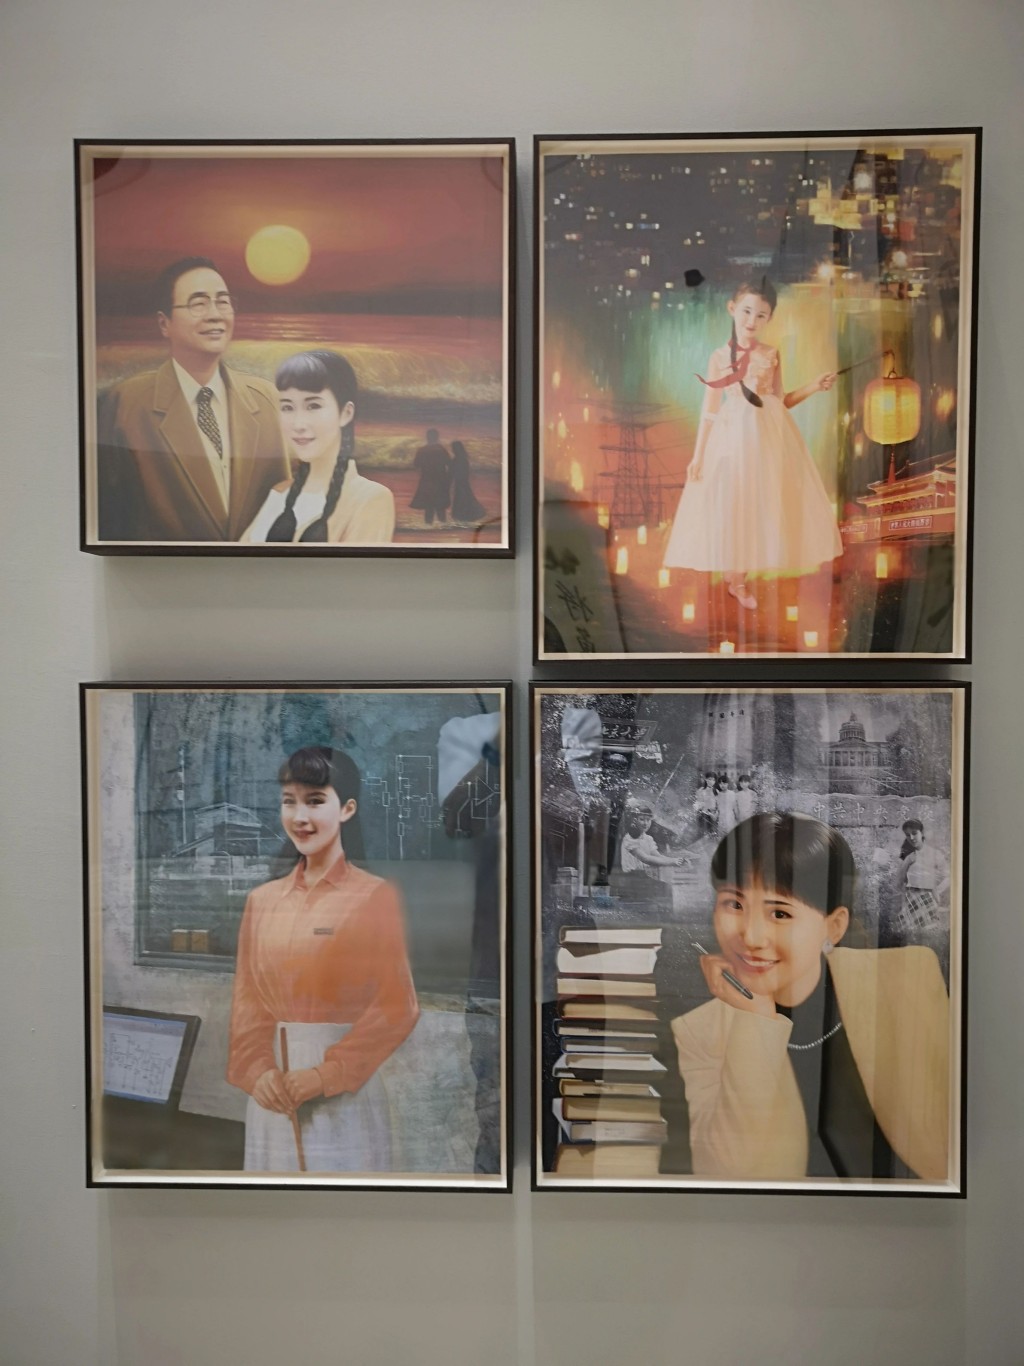 李小琳自画像。左上的画是她和父亲李鹏在一起。